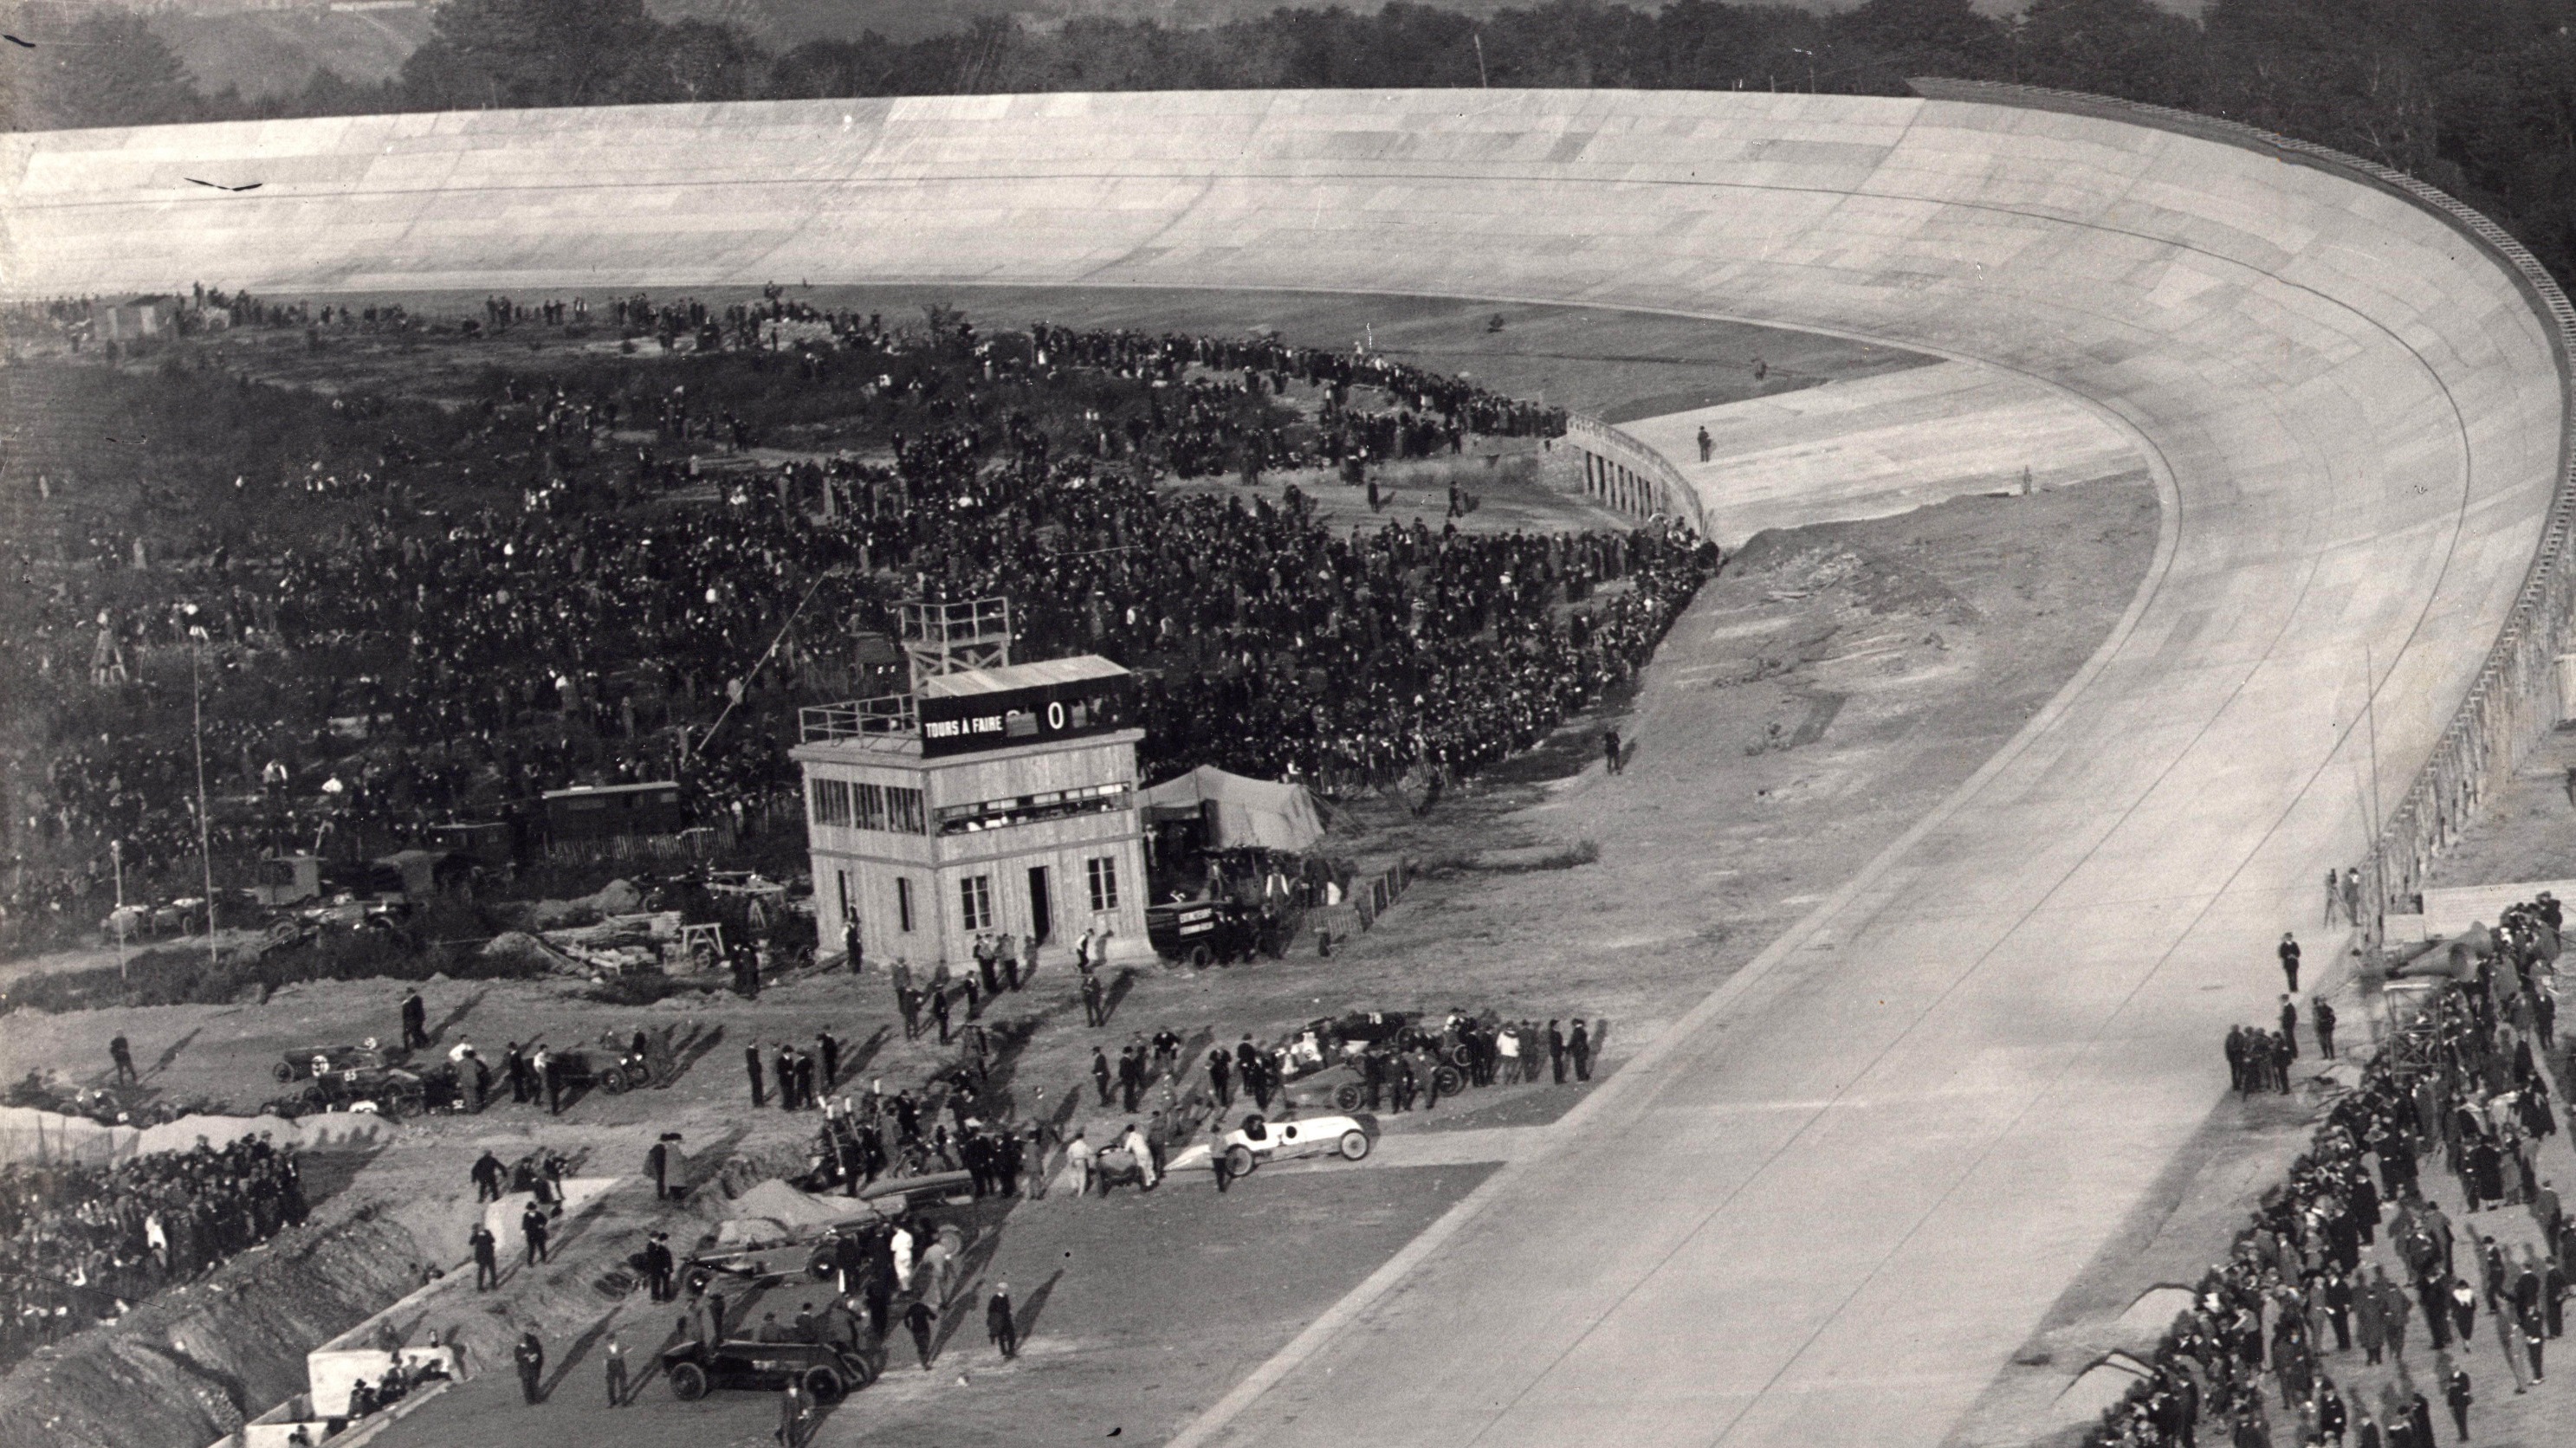 Les secrets de l'autodrome de Montlhéry, la piste de tous les records depuis 100 ans